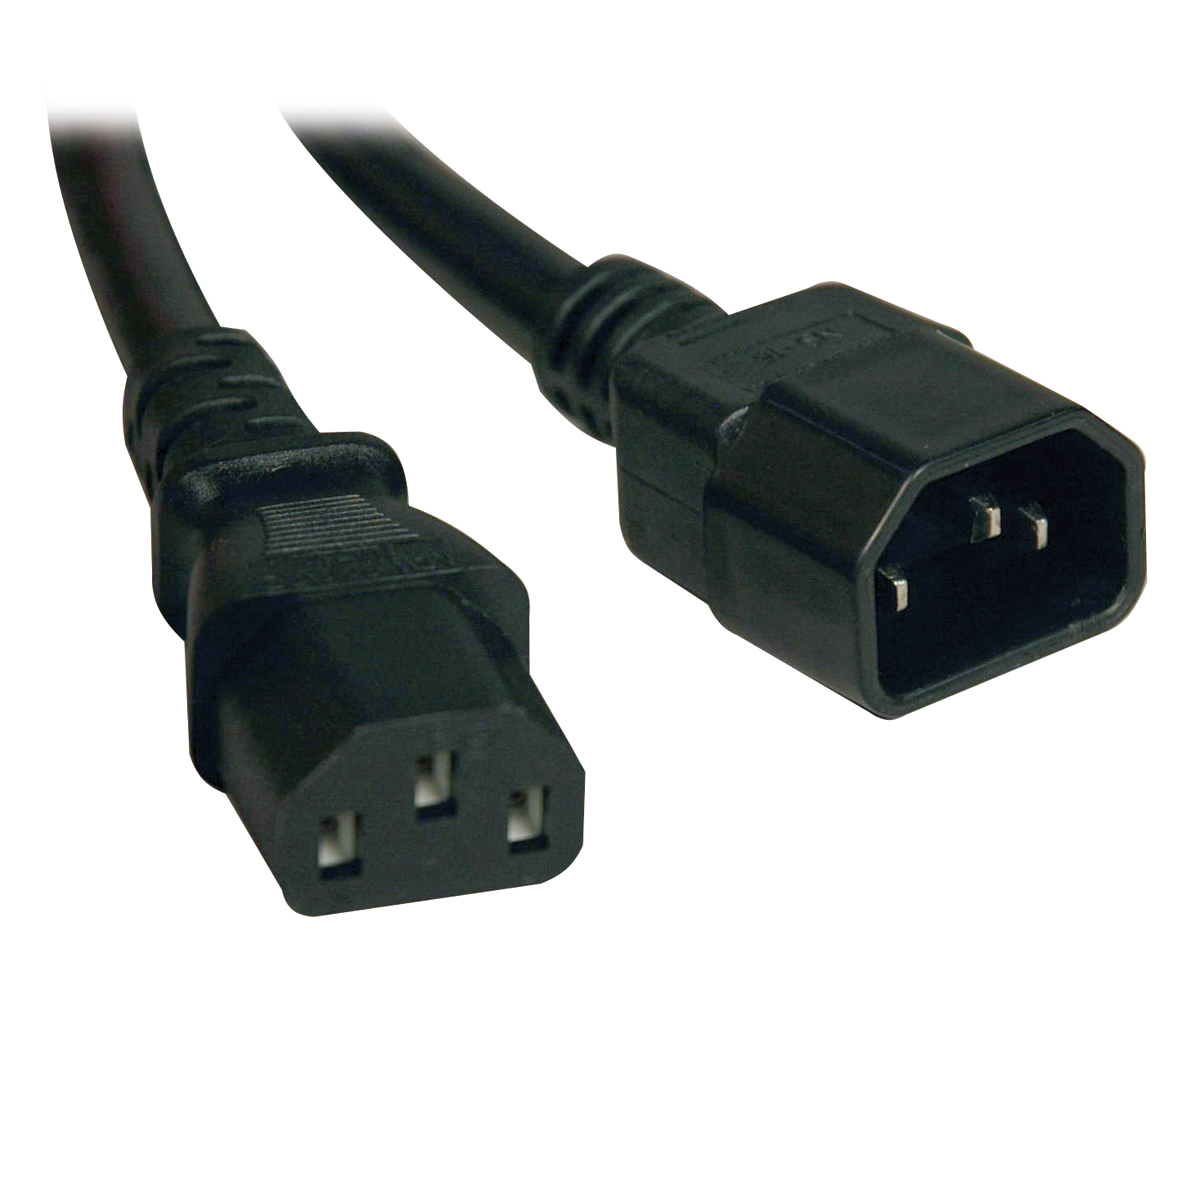 Cable De Poder Tripp Lite 18Awg C13 Macho - C14 Hembra 3M P004-010